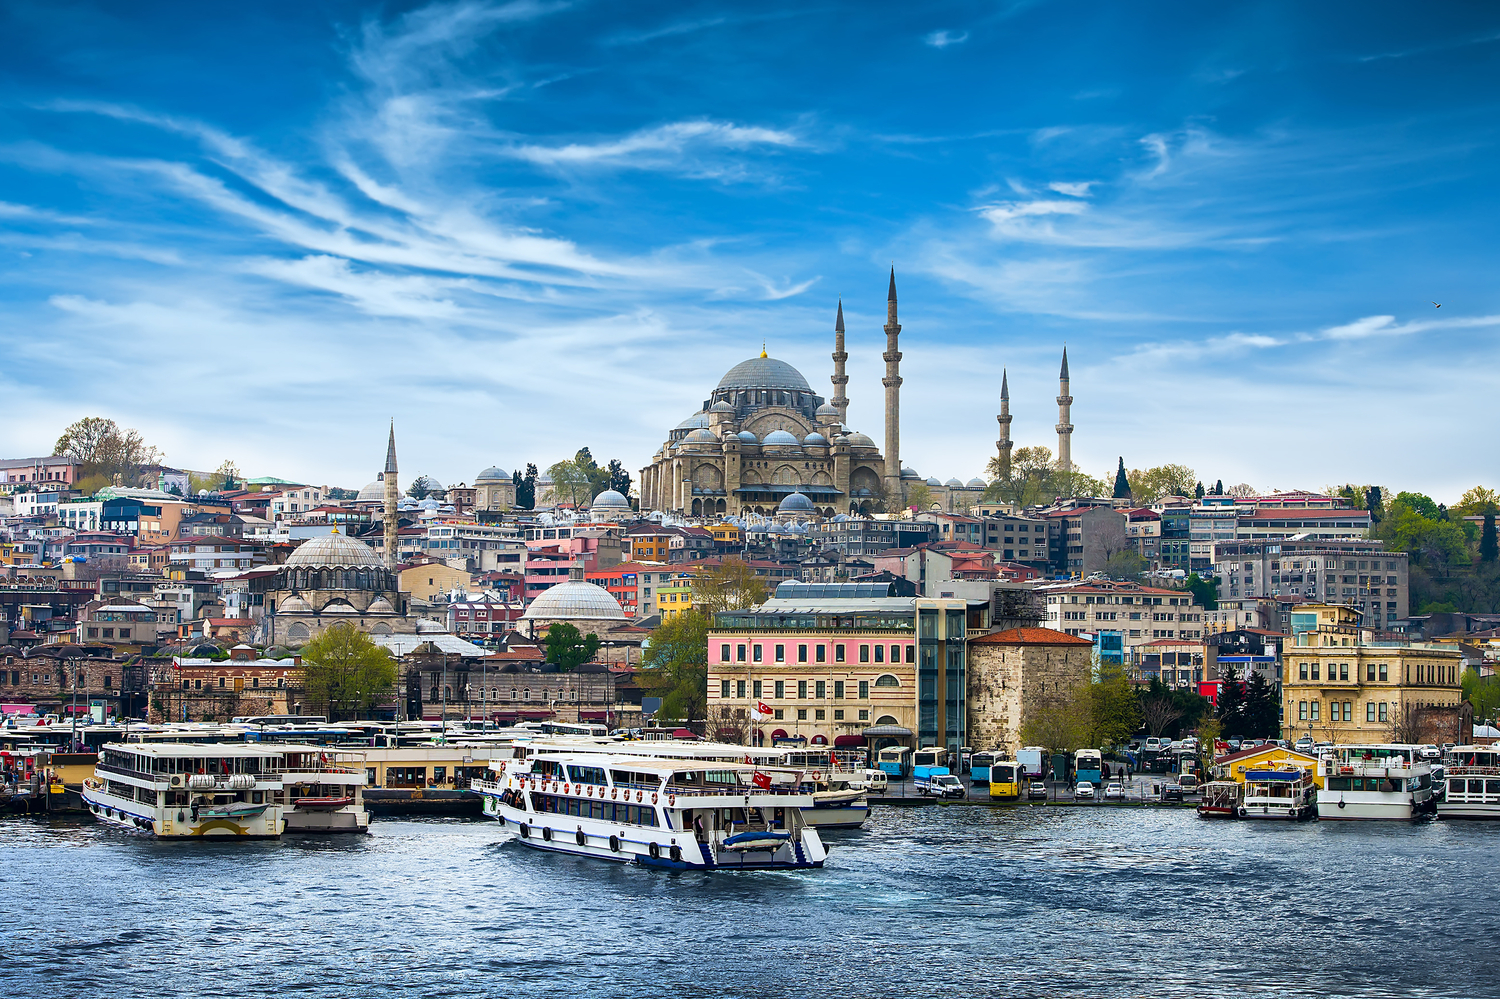 Turkey gets 11.9 million tourist arrivals despite pandemic